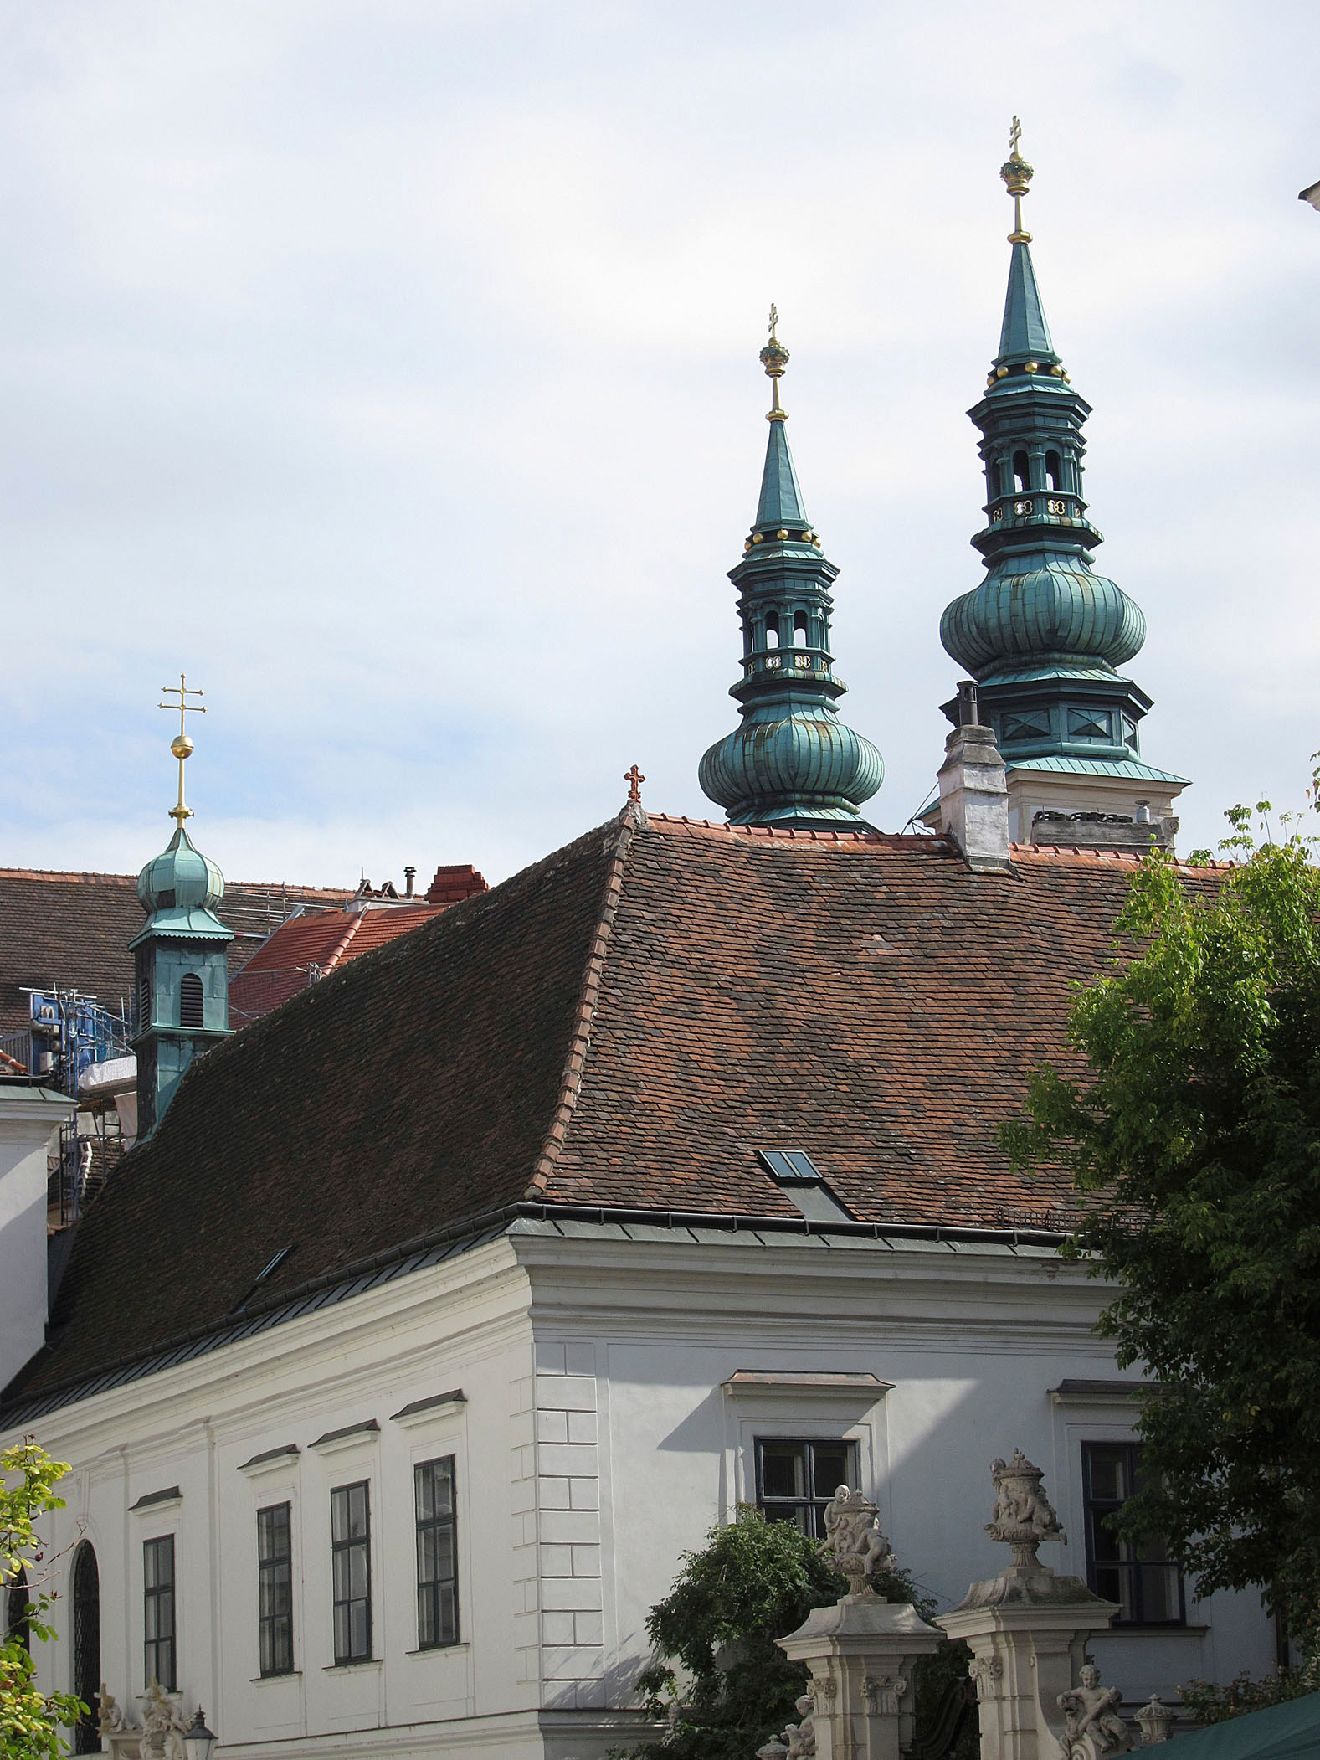 Heiligenkreuzer-Hofkapelle im Heiligenkreuzerhof. Schlagworte: Architektur, Gebäude, Kirche, Sehenswürdigkeit, Stadtlandschaft, Turm